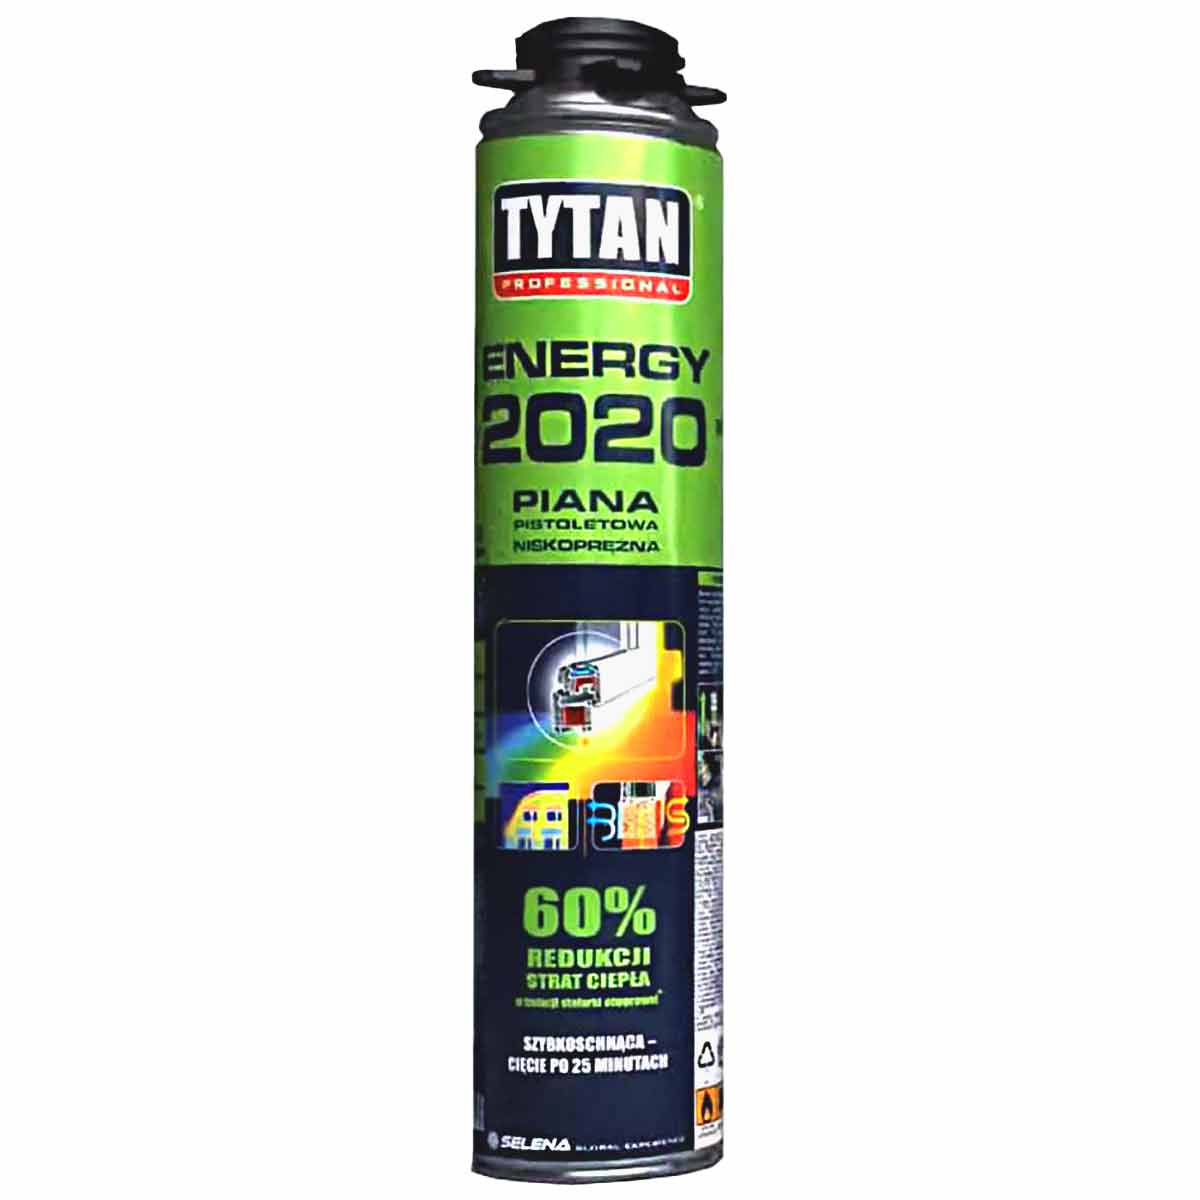 9307اسپری فوم پلی اورتان تایتان انرژی TYTAN ENERGY 2020